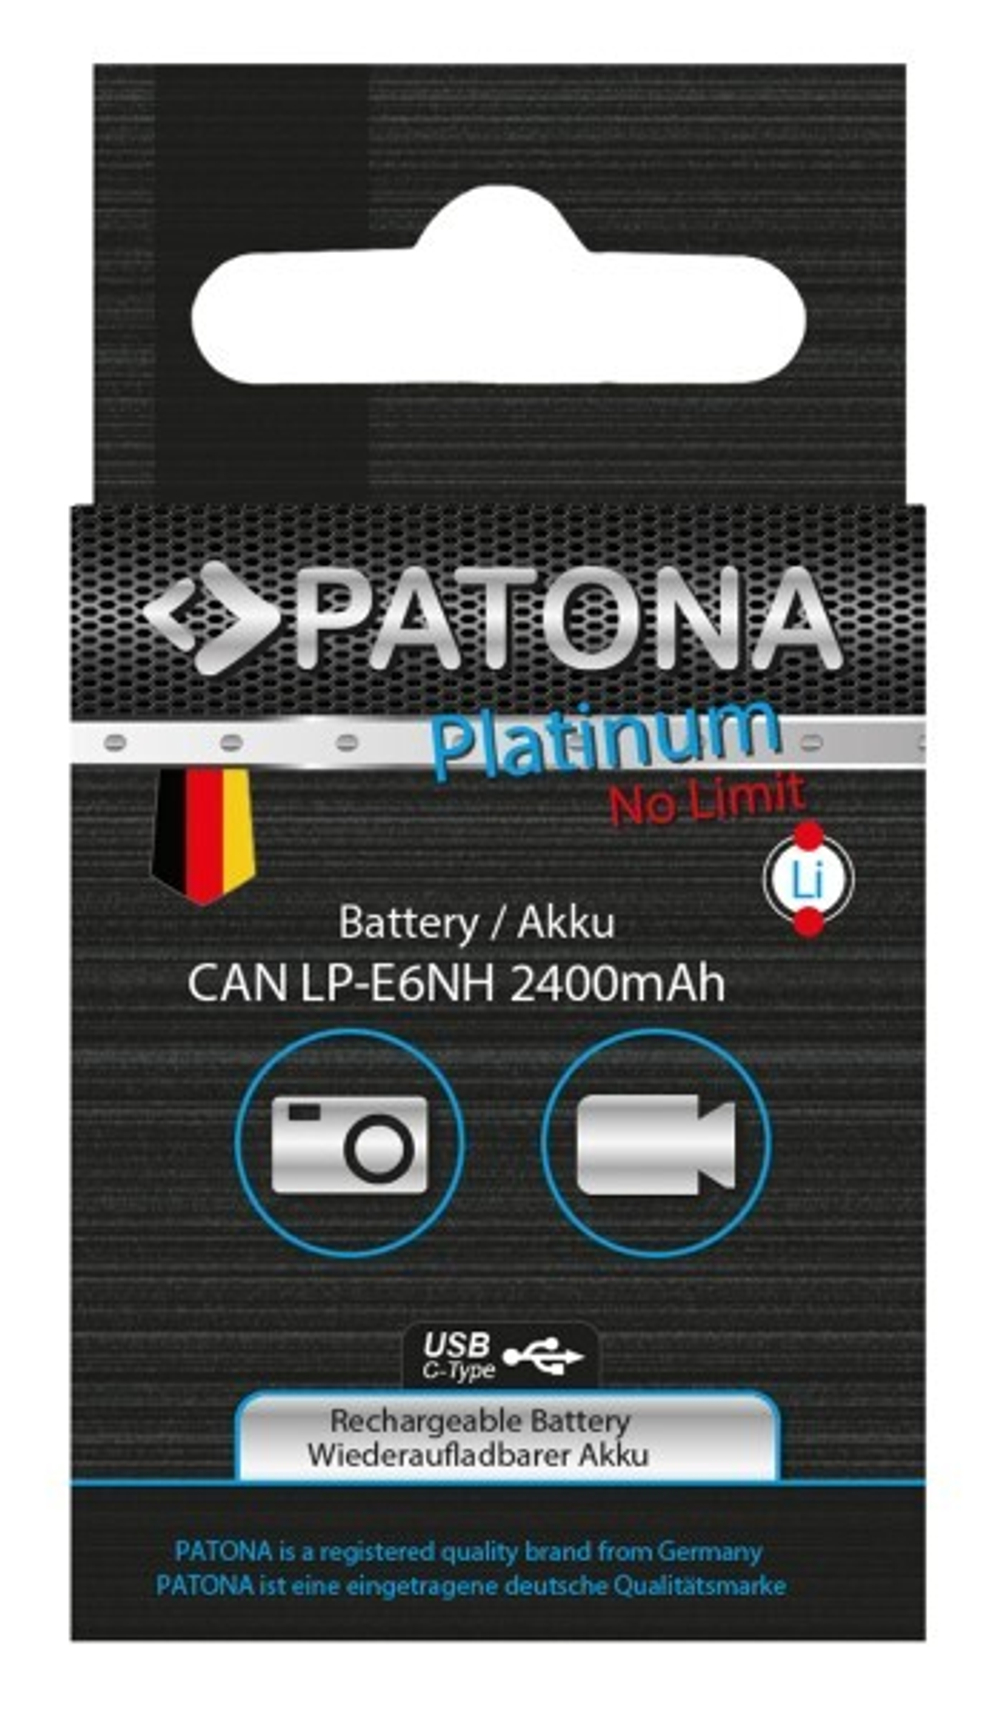 PATONA Platinum аналог Canon LP-E6NH с зарядкой по USB-C